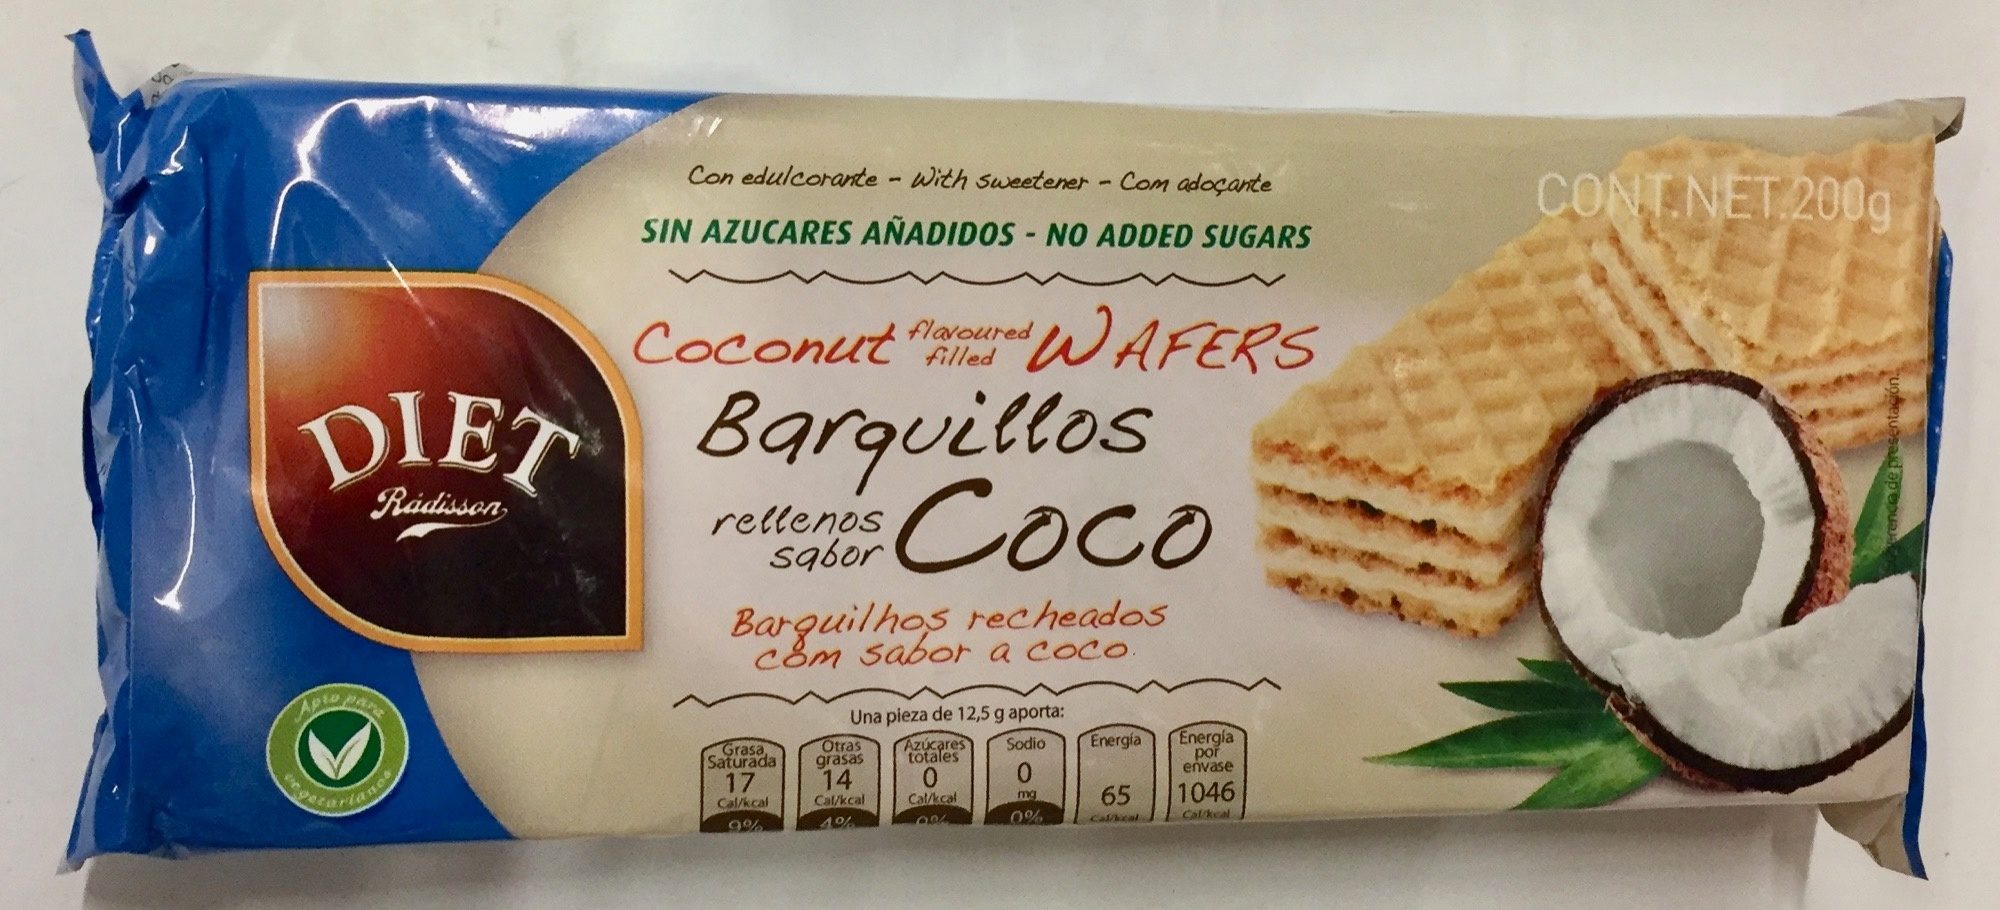 Barquillos Rellenos Sabor Coco - Product - es